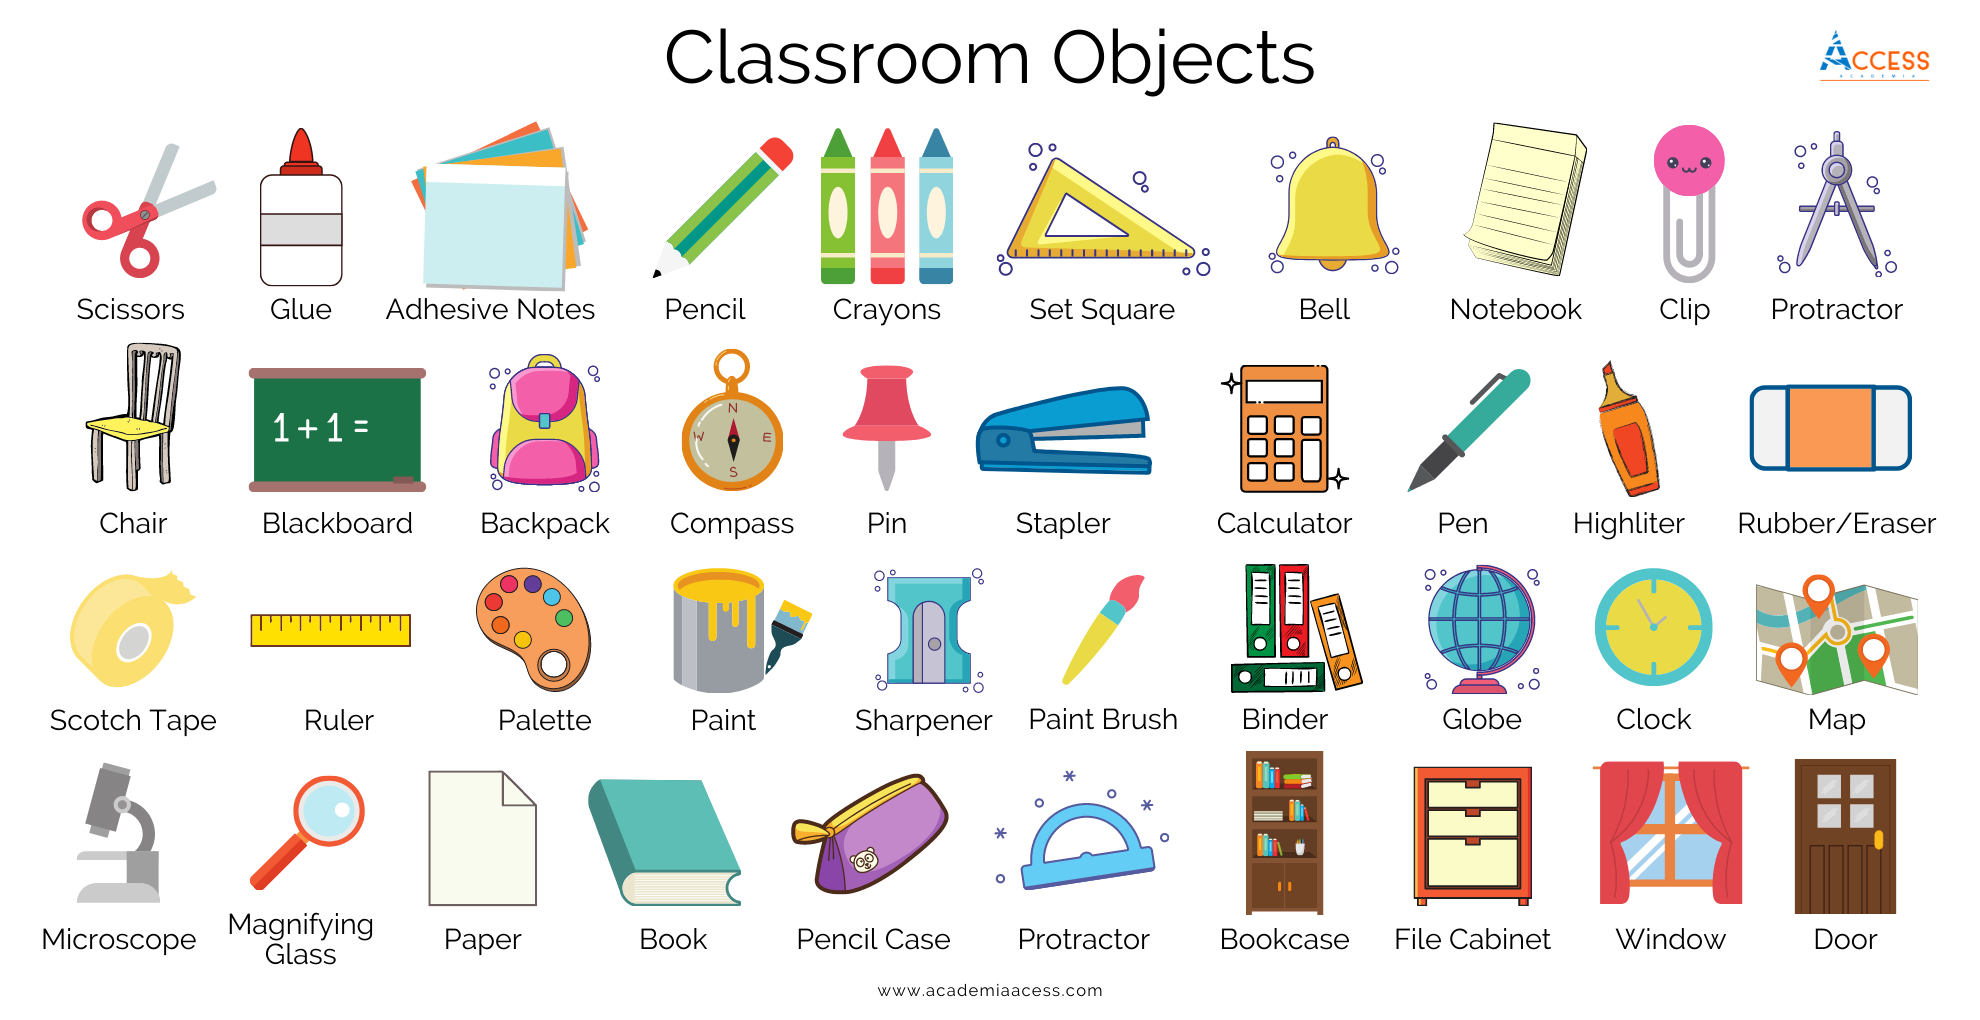 objetos del salon de clases, classroom objects, academia access, aprende inglés gratis